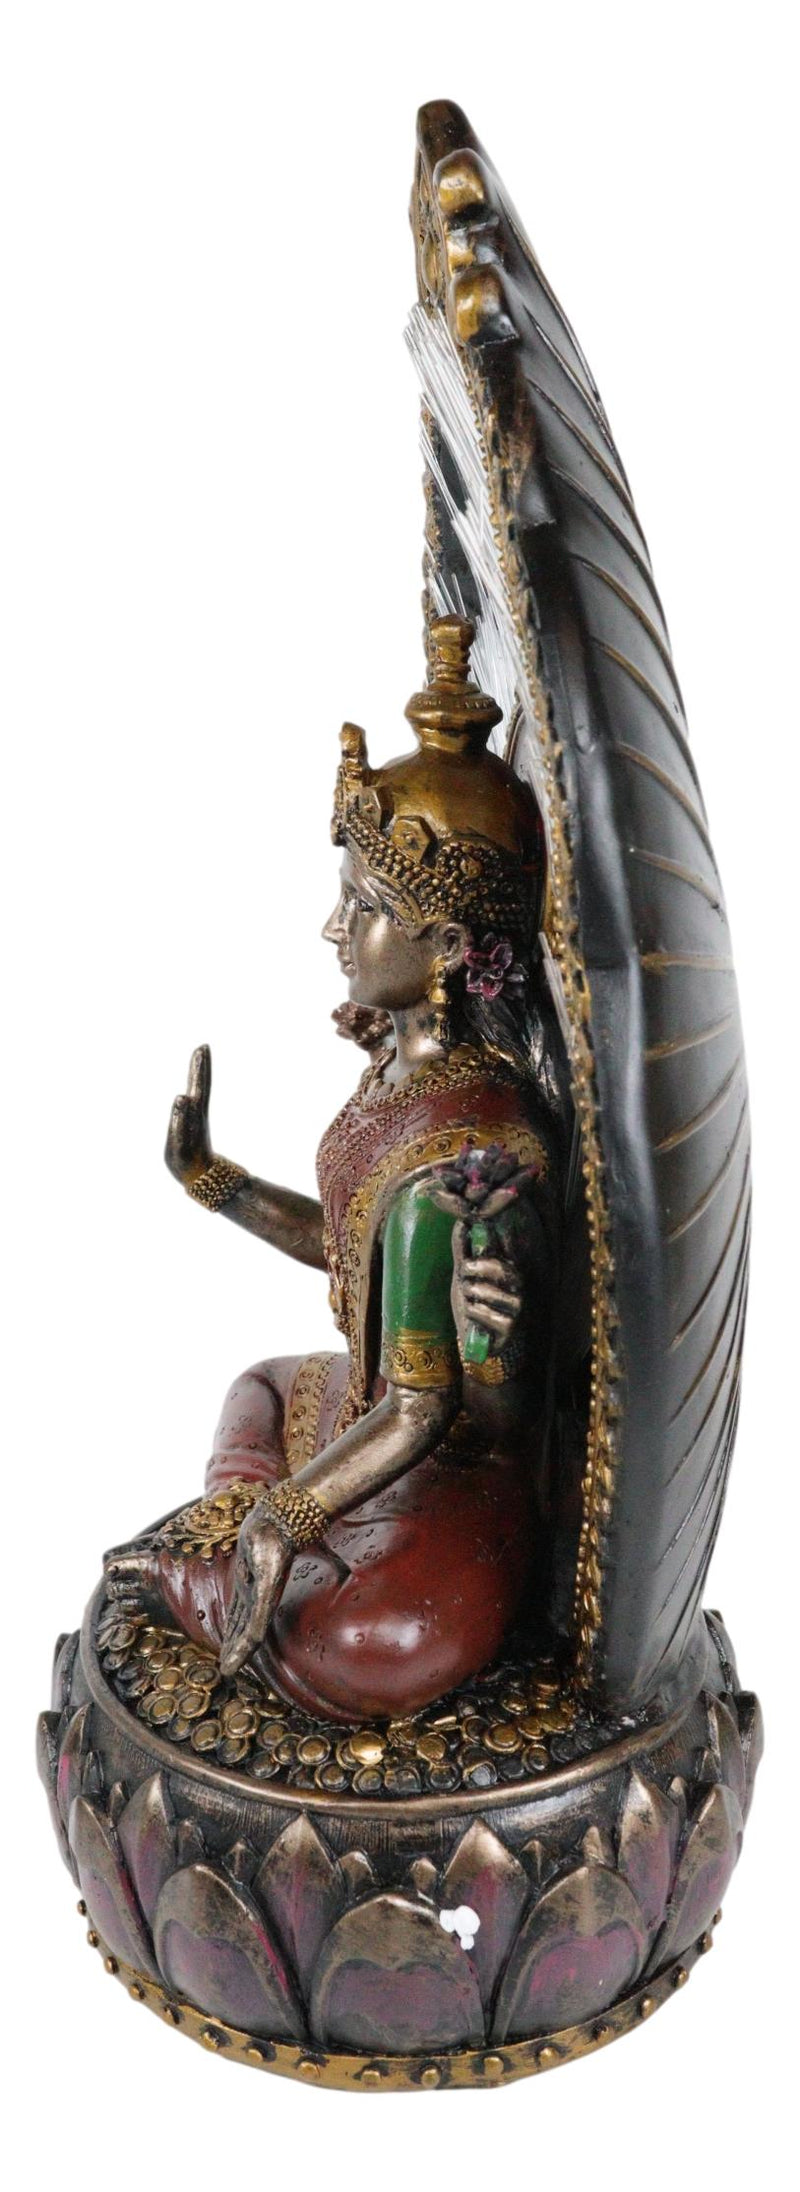 Ebros Vastu Hindu Goddess Lakshmi On Lotus Throne Colorful Fiber Optics Light Figurine